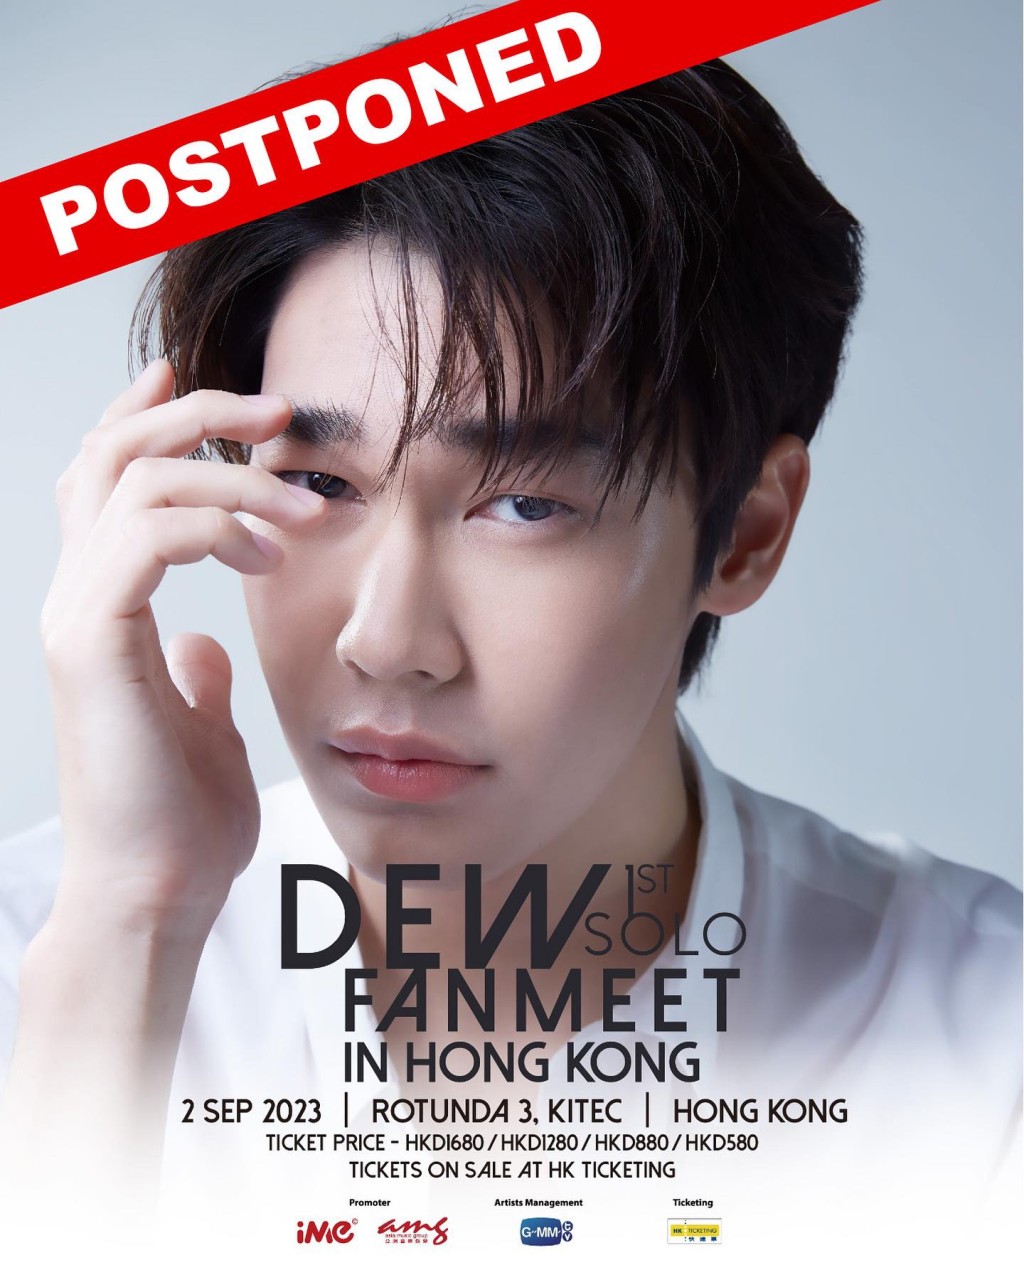 Dew的香港见面会已宣布延期。